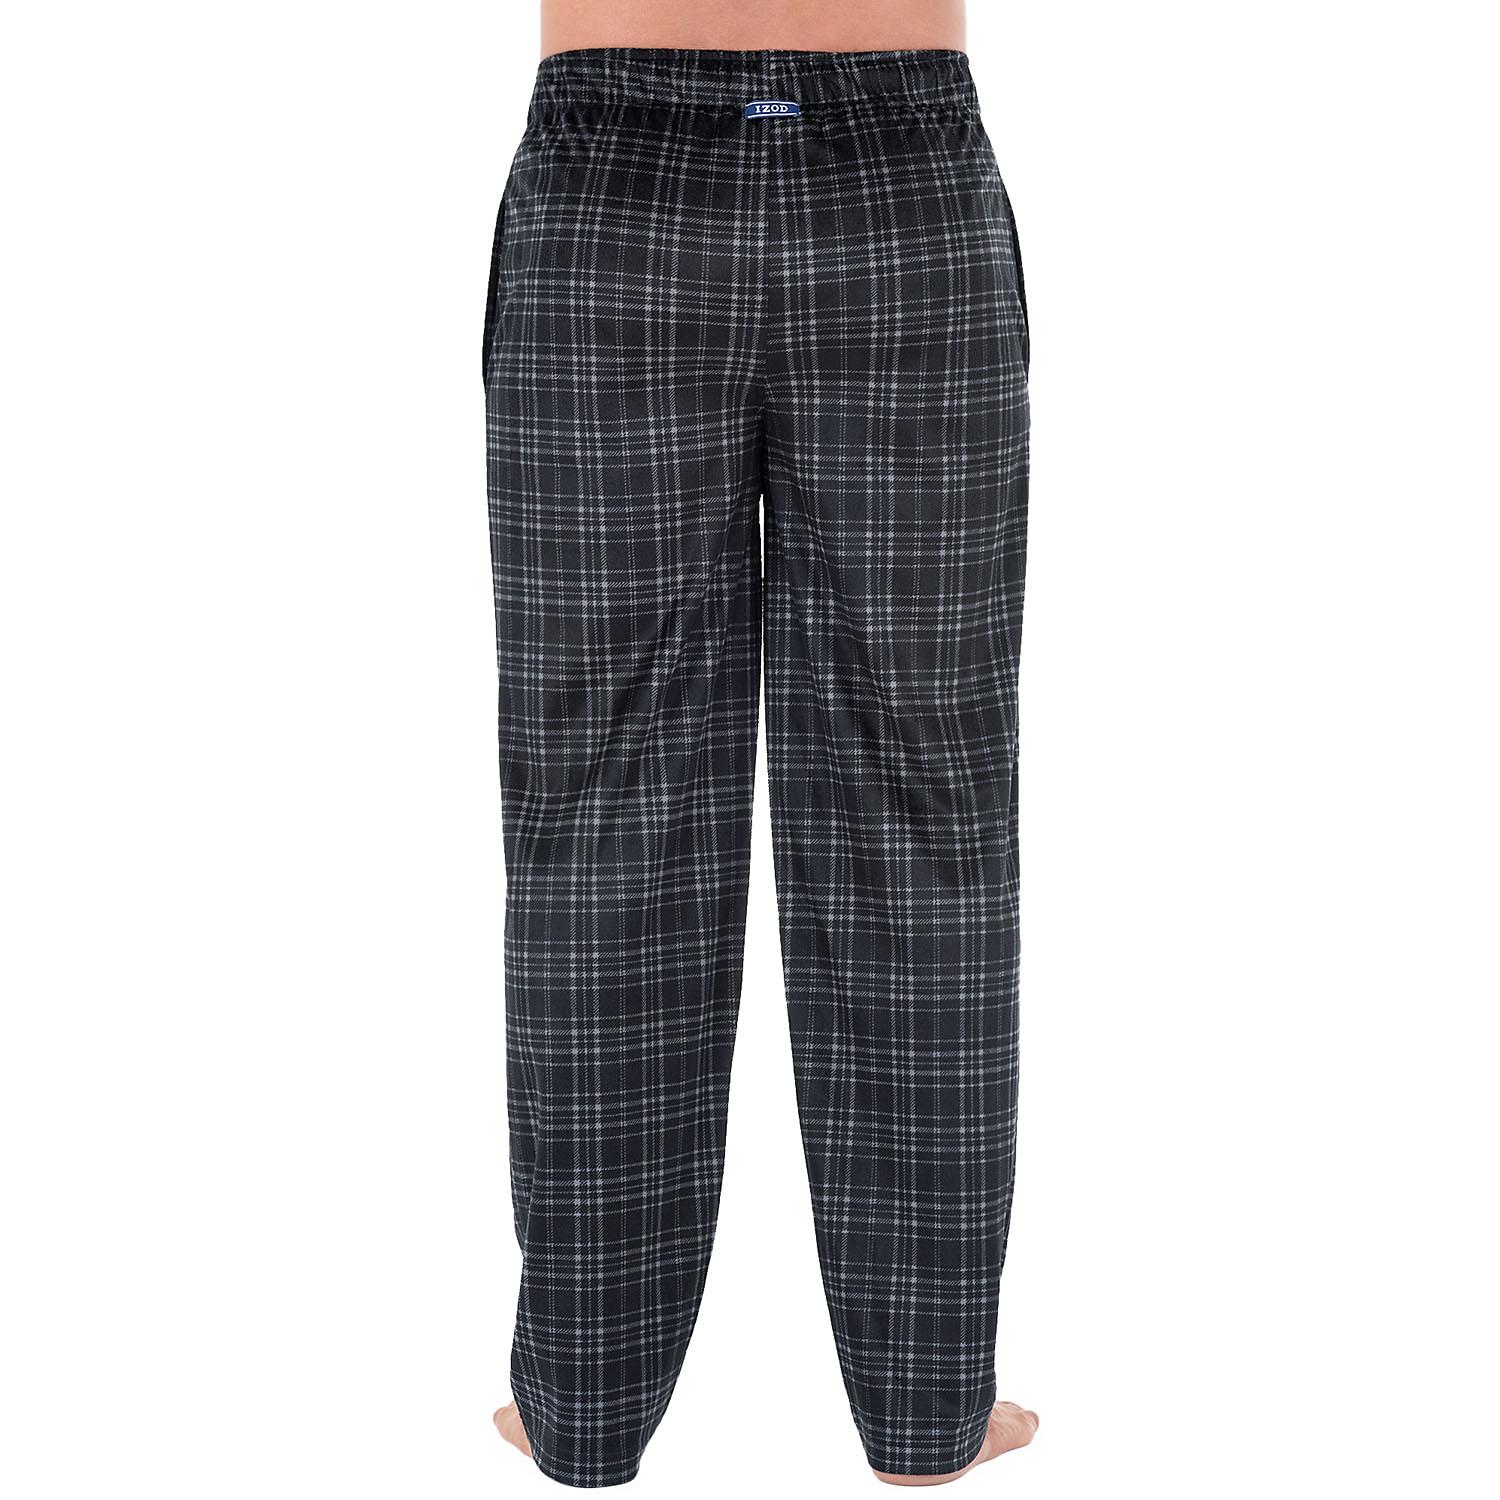 Izod Men's Micro Fleece Pajama Pant in Black, Size Small - image 1 of 3